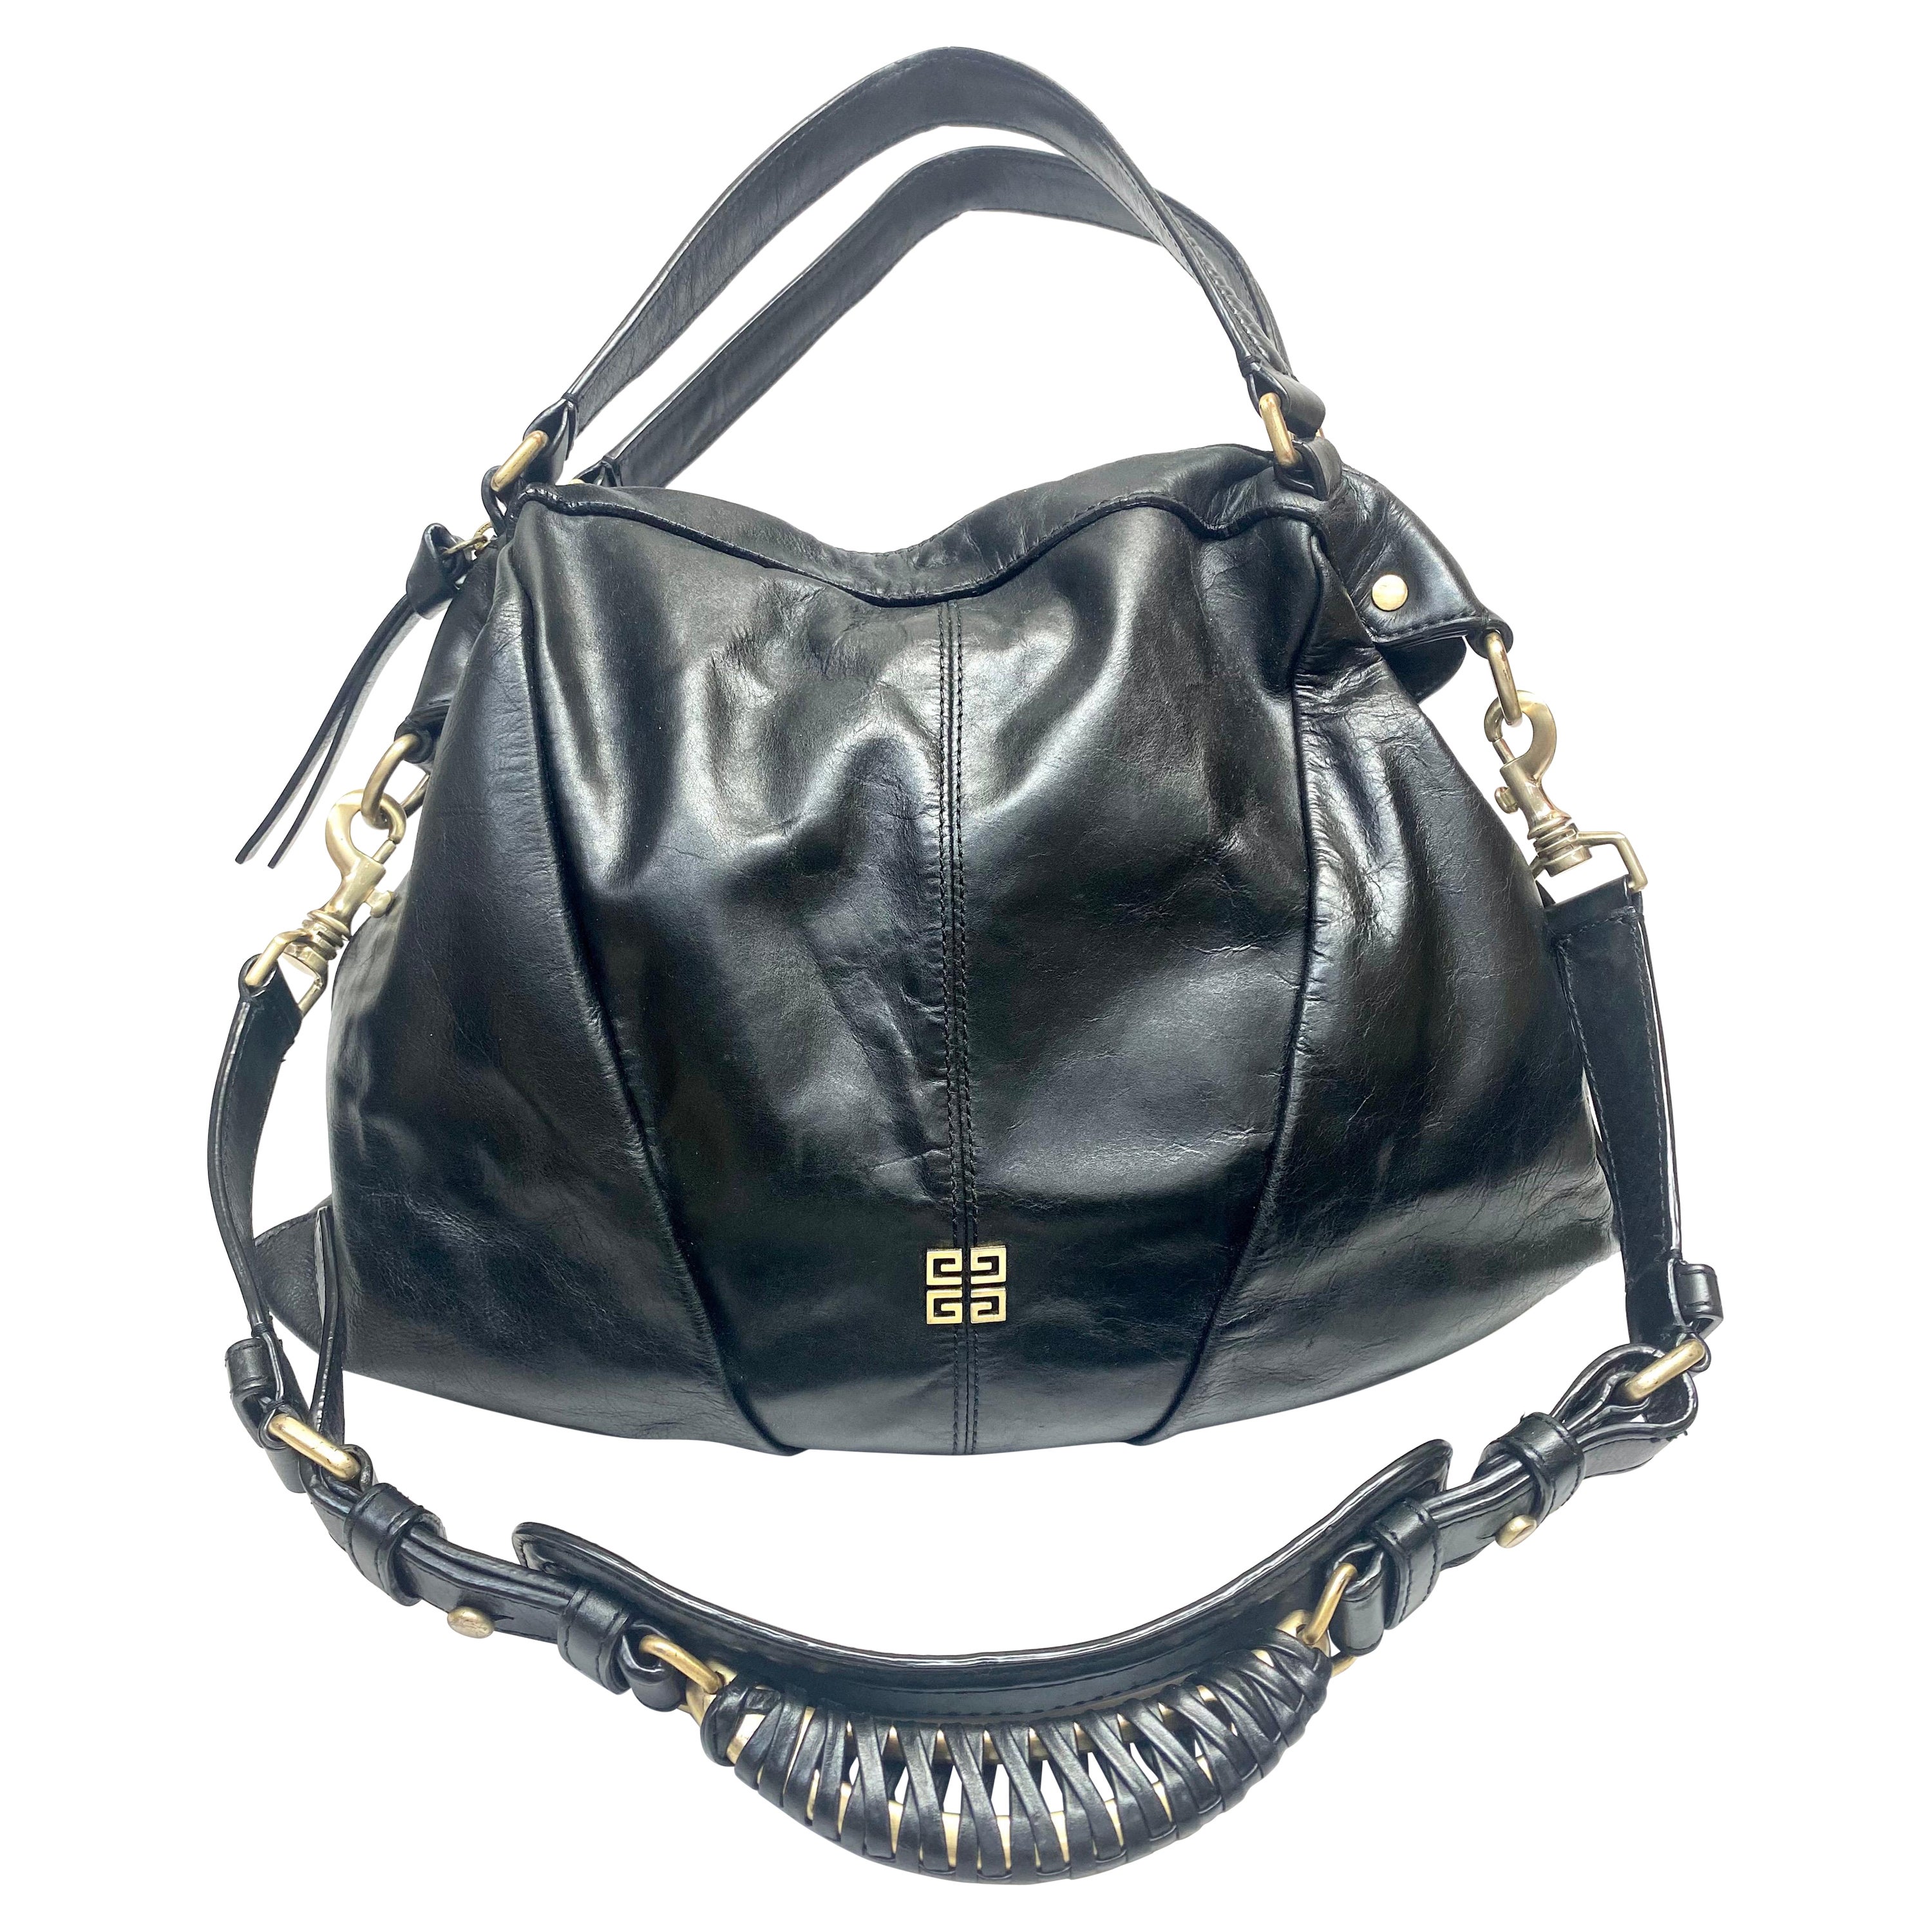 Givenchy Black Leather Shoulder Handbag-GHW For Sale